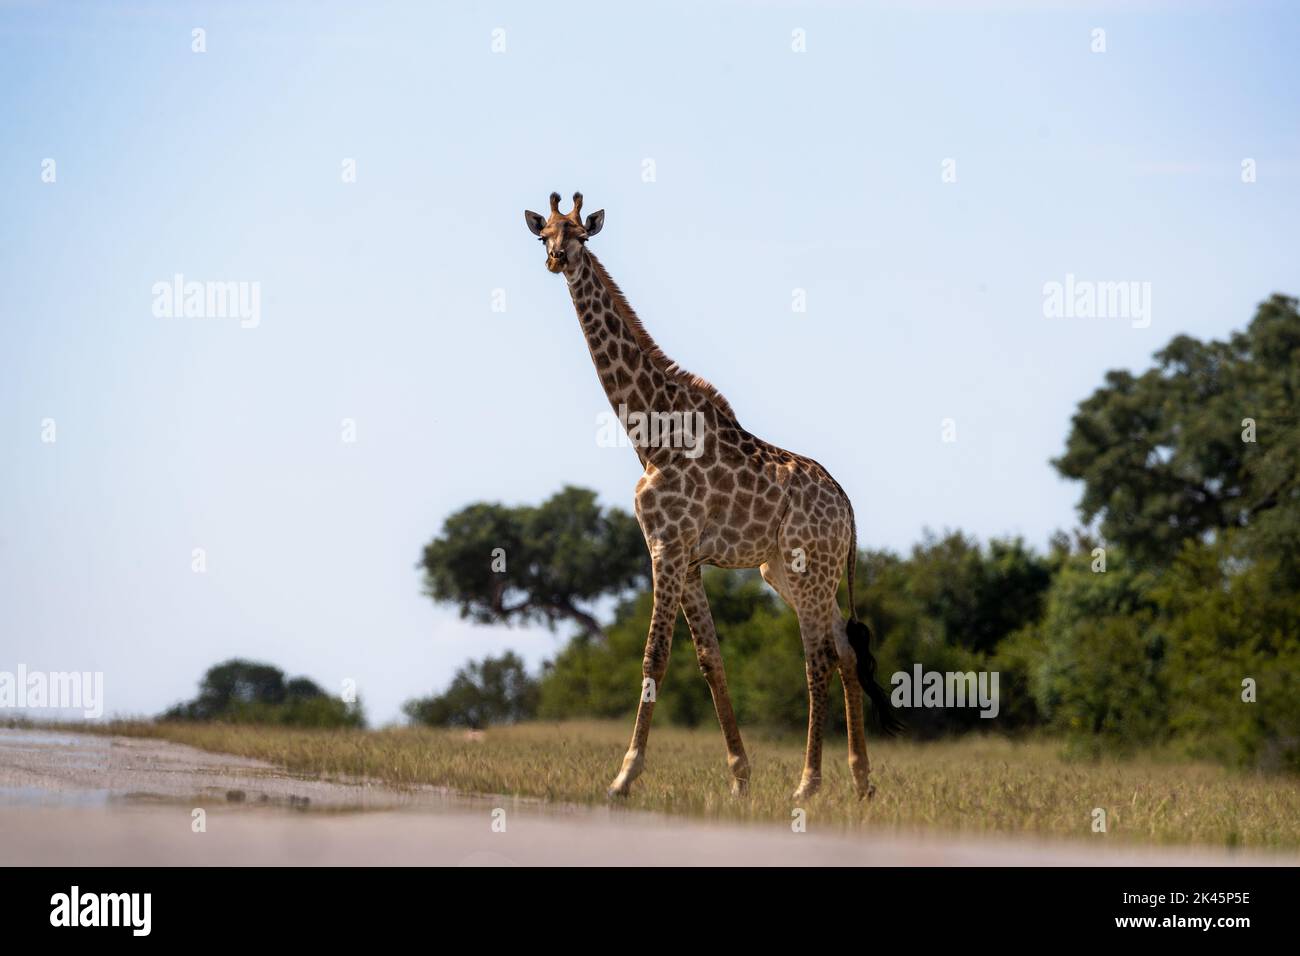 A giraffe, Giraffa, stands in short grass and looks forward Stock Photo